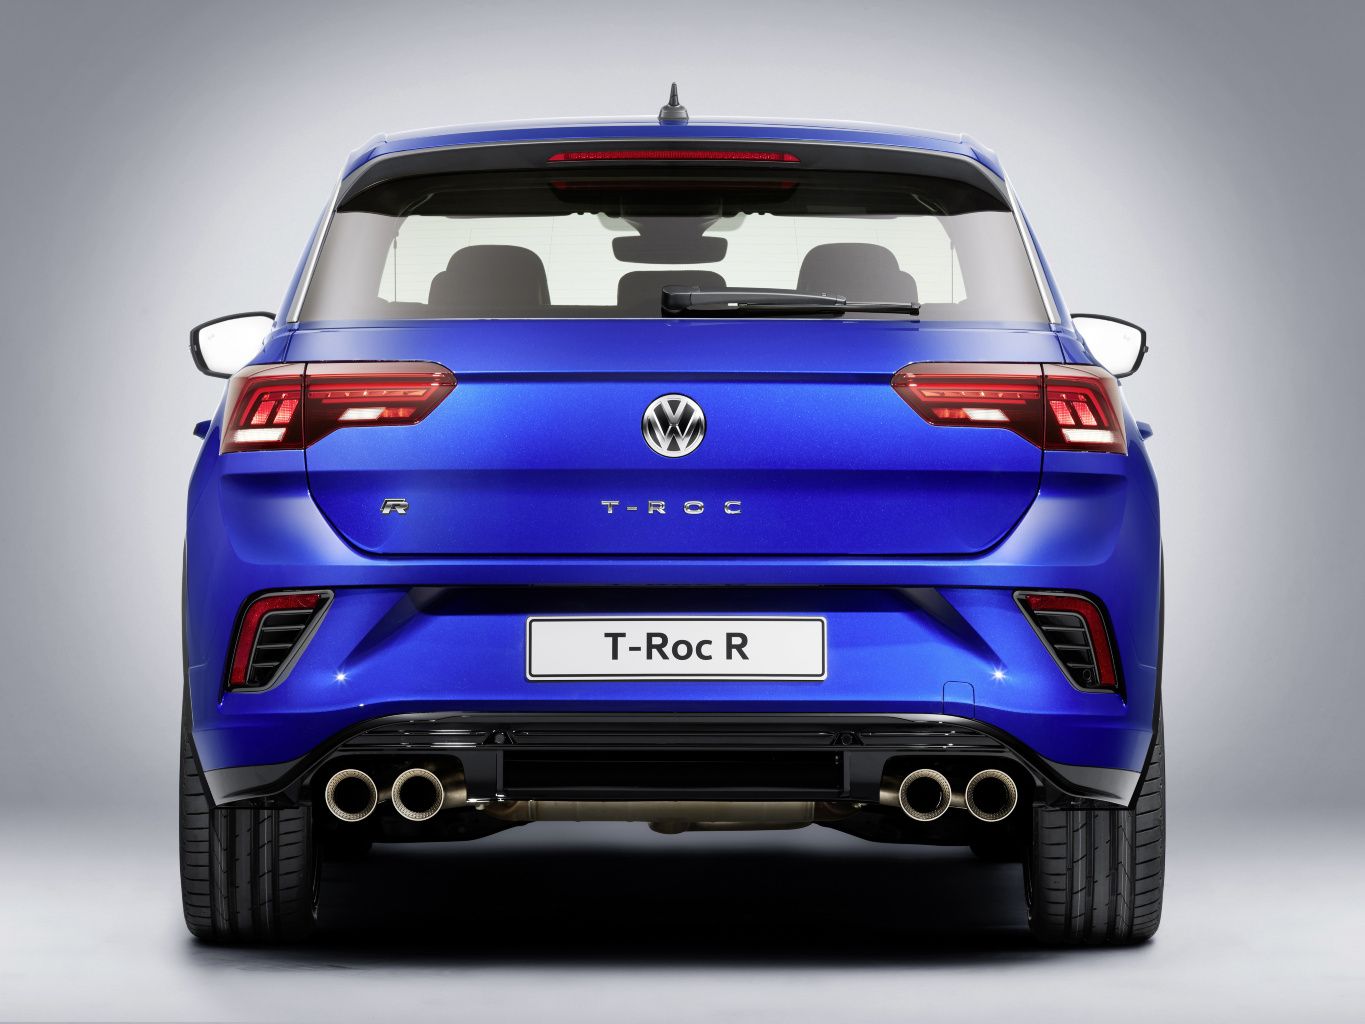 Topmodell der Crossover-Baureihe: Der neue VW T-Roc R -   Magazin